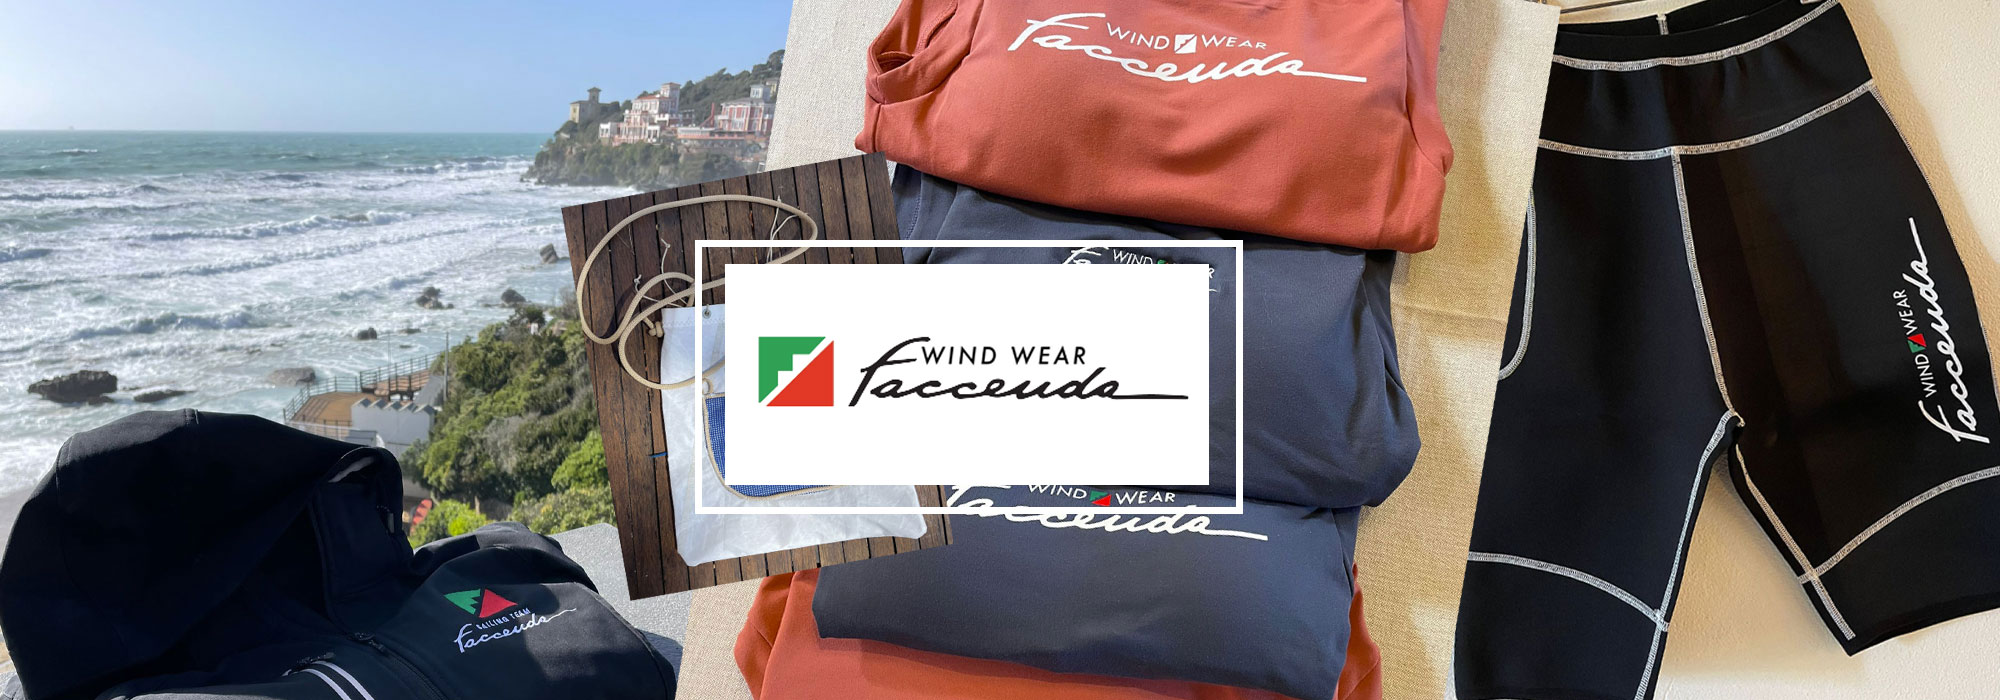 banner shop faccenda wind wear